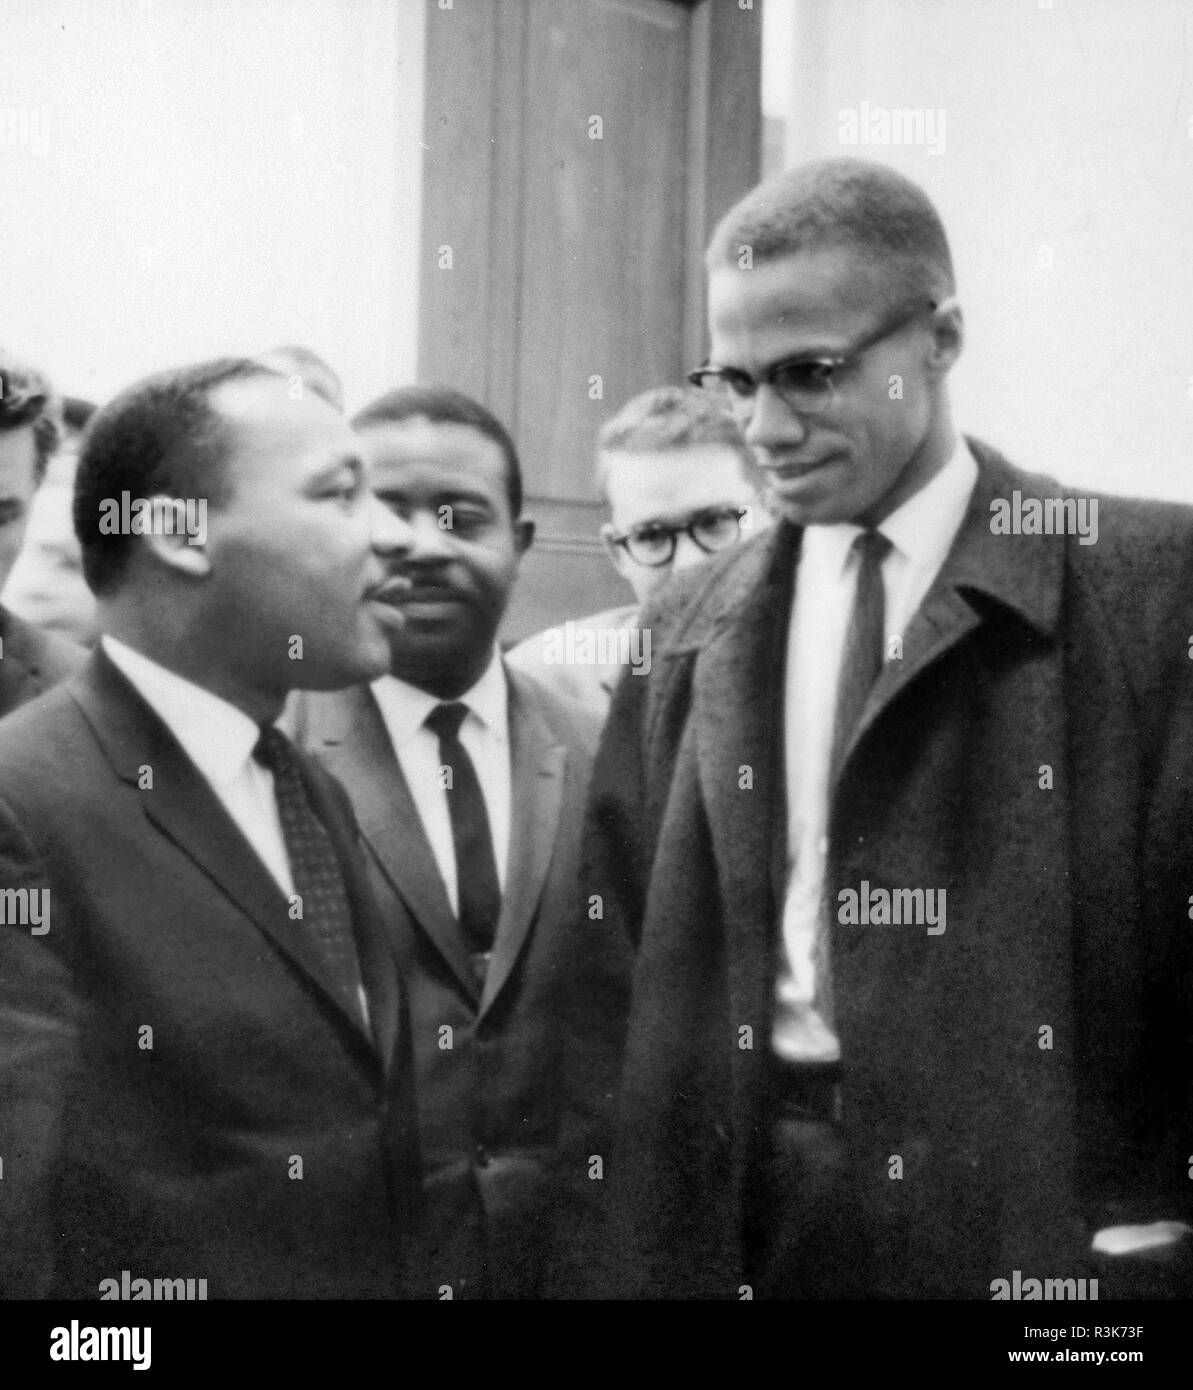 MARTIN LUTHER KING (1929-1968) American civil rights leader à gauche avec Malcolm X ion 26 mars 1964. Photo : Bibliothèque du Congrès. Banque D'Images